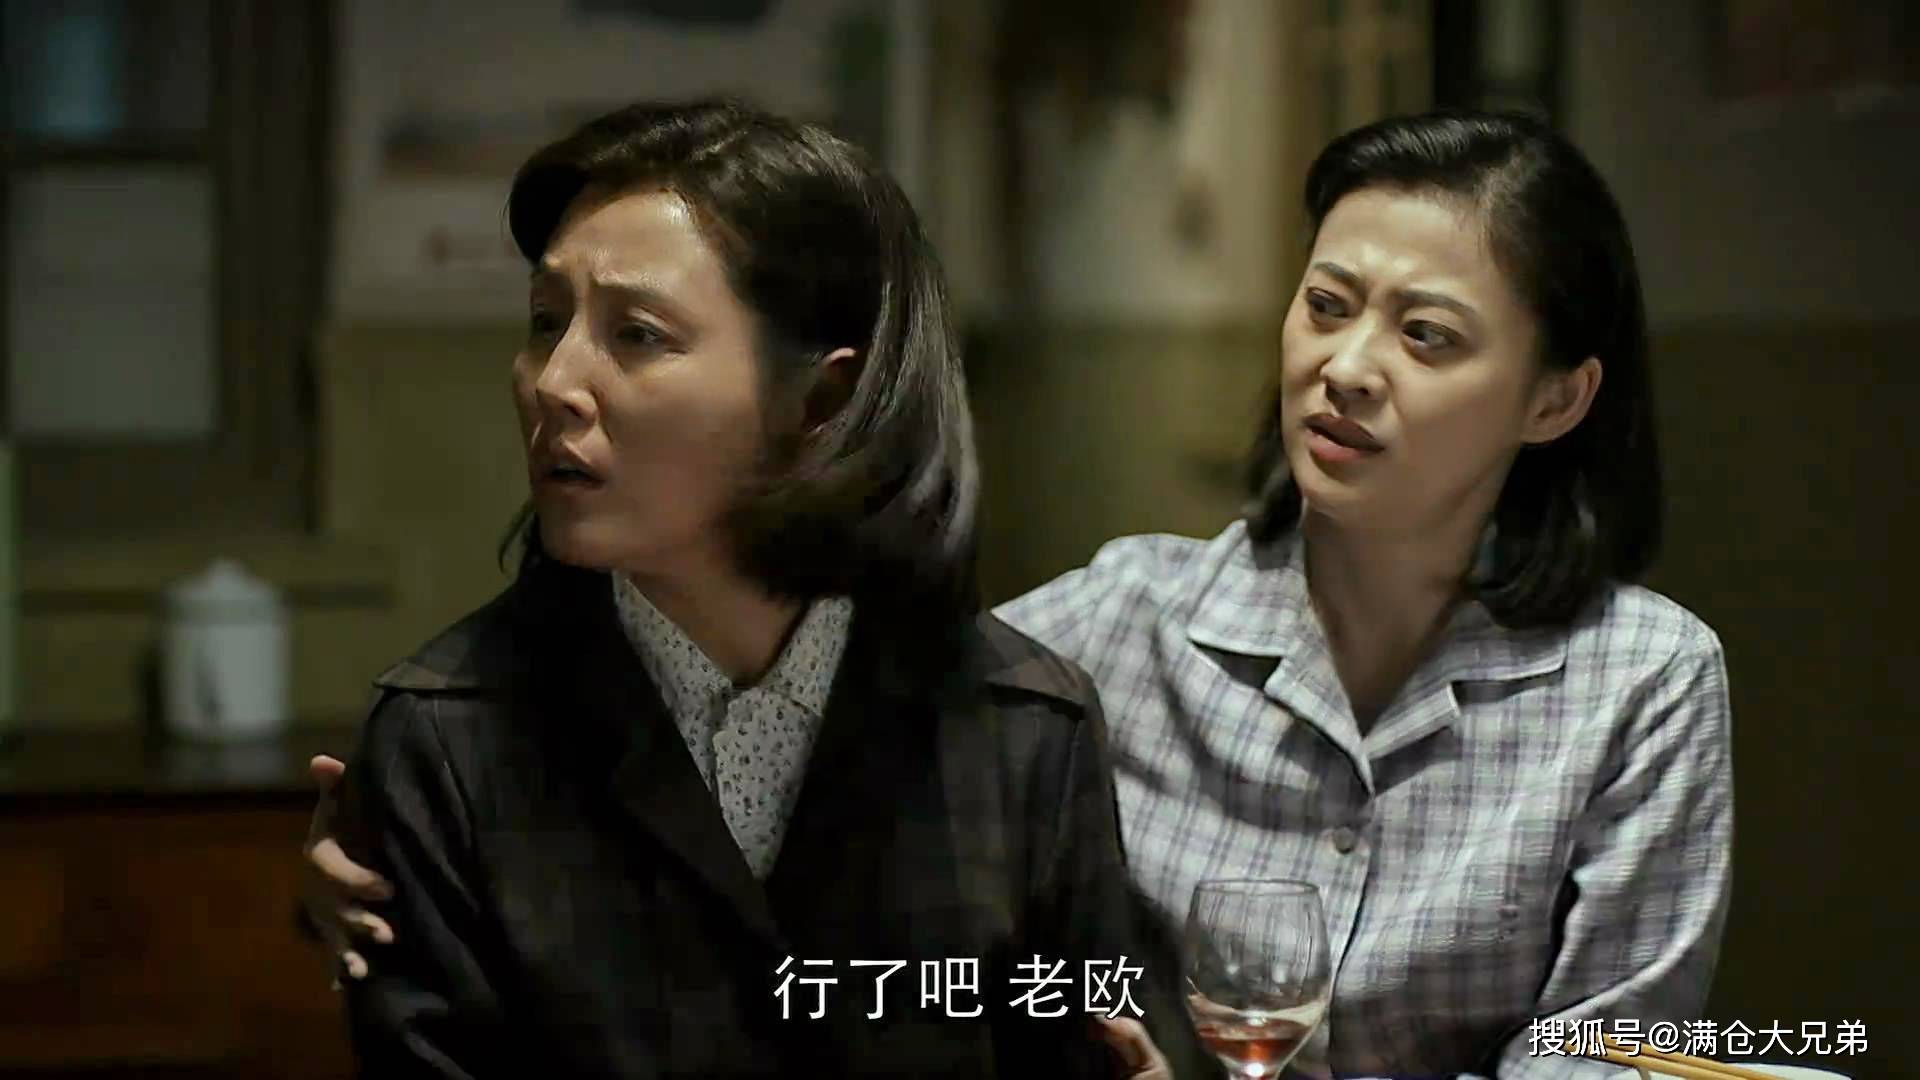 张延,梅婷出演《父母爱情》